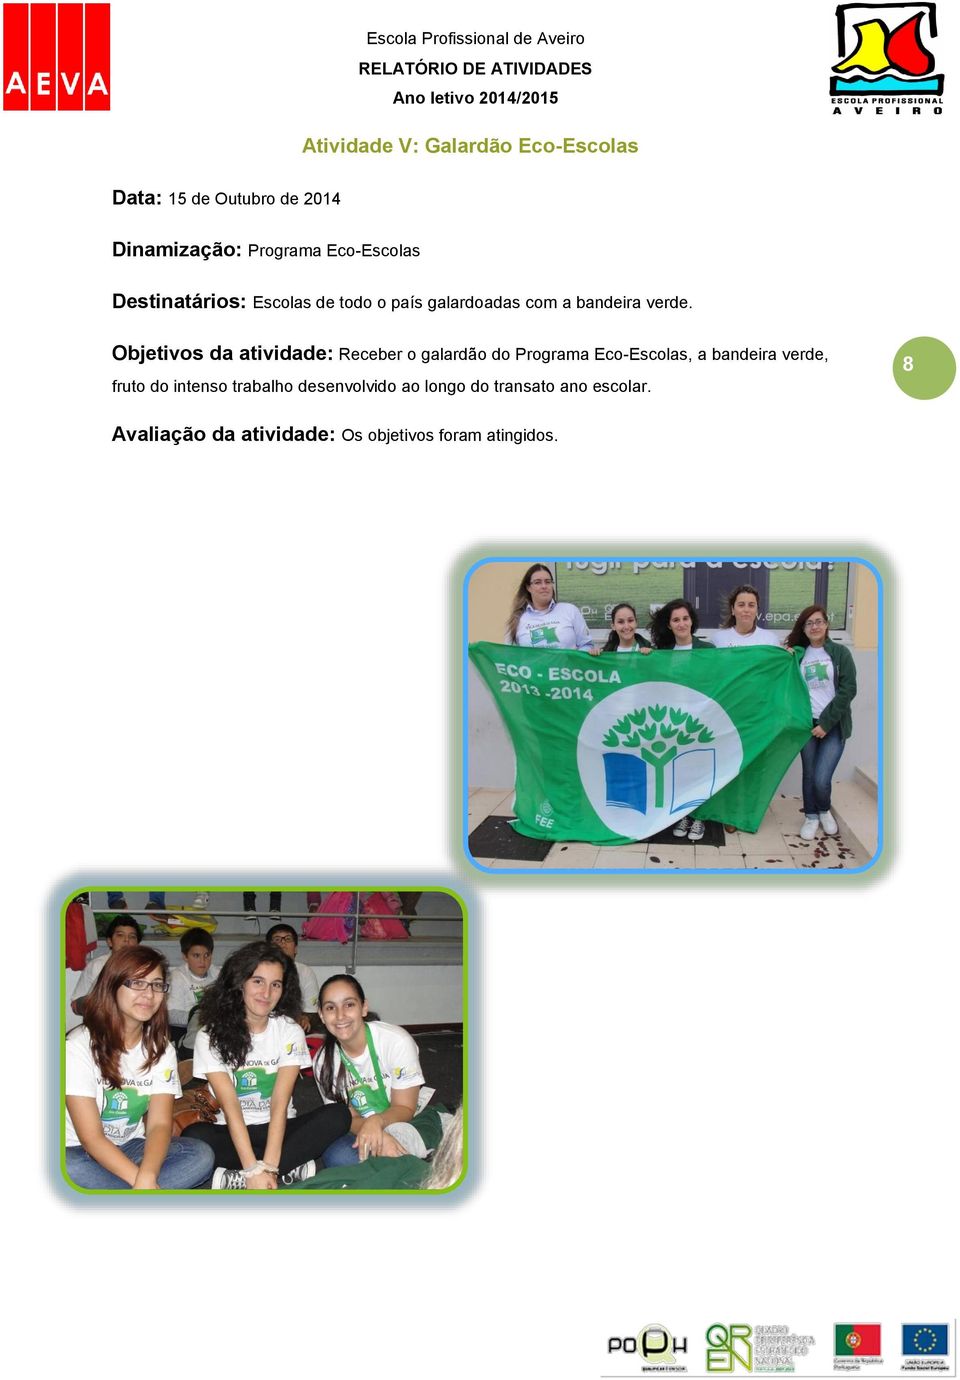 Objetivos da atividade: Receber o galardão do Programa Eco-Escolas, a bandeira verde, fruto do